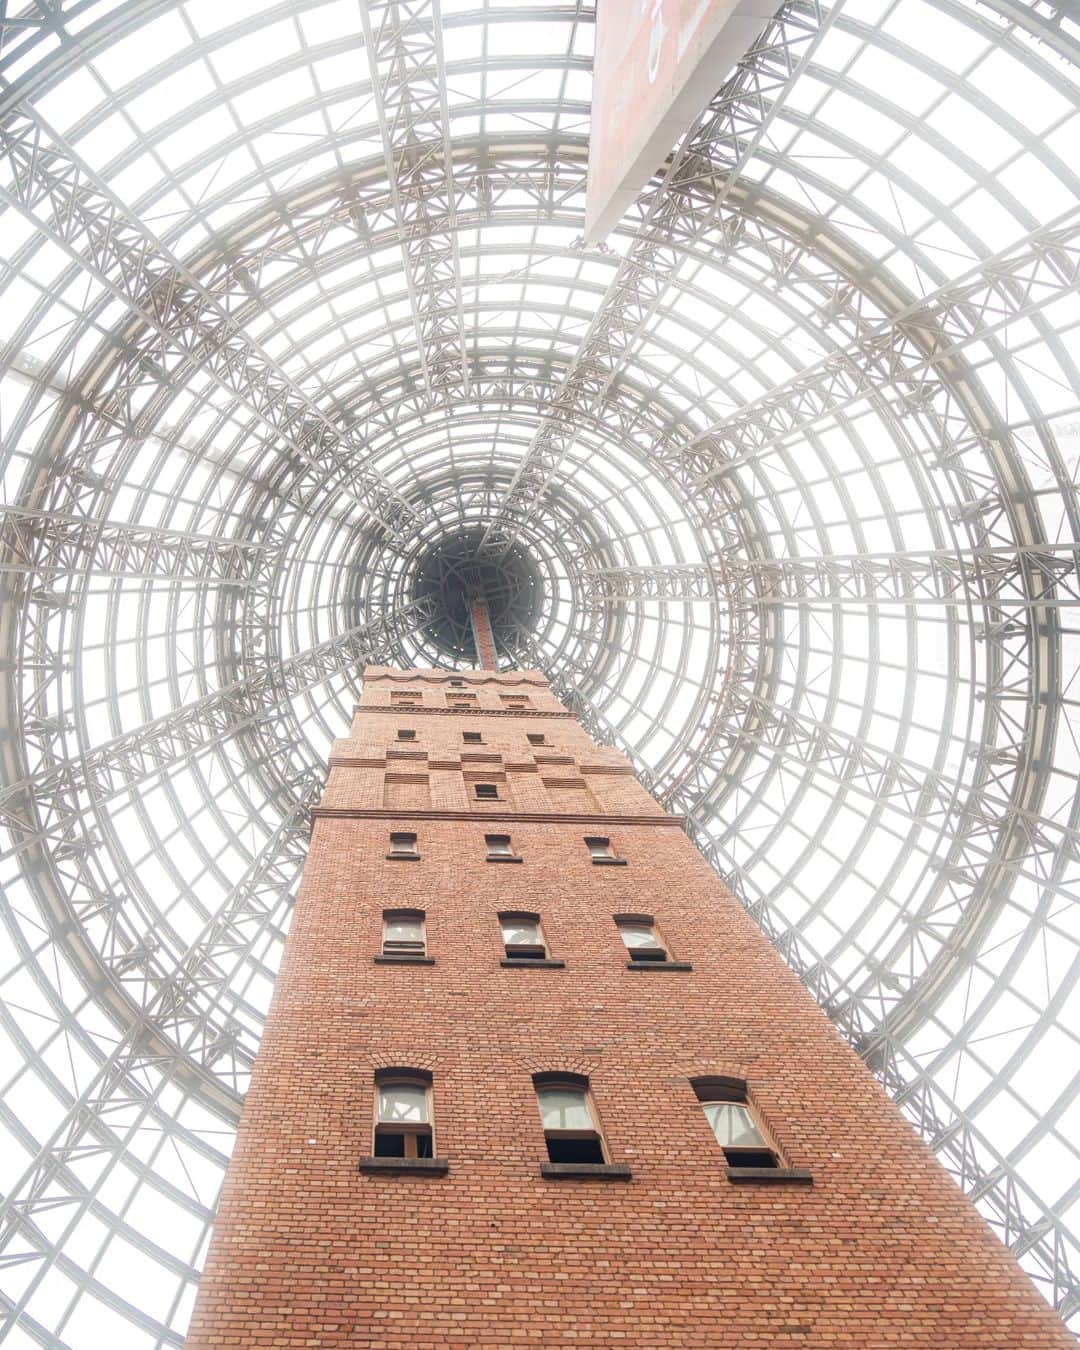 6151のインスタグラム：「MELBOURNE CENTRAL｜オーストラリア メルボルンの旅  1889年に建てられた歴史的建造物「クープス散弾製造塔（The Coop's Shot Tower）」を覆うように建てられた円錐型の「The Glass Cone」。  日本人の建築家 黒川紀章氏が設計したメルボルンの歴史的建造物でもあるショッピングセンター「メルボルン・セントラル」内に聳え立つ姿は圧巻だった。  クープス散弾製造塔は高さ50m、その上に900枚を超えるガラスのアトリウムというなんだか嘘みたいな景色で見上げていると何が現実かわからなくて混乱してくる。  ショッピングセンターなのでお買い物も楽しめる！メルボルンおすすめのお土産屋さん紅茶専門店「T2」も入った館なのでふらっと覗いたり。お買い物たくさんしたくなるなー。  @newt_guide #NEWTでメルボルン #NEWTモニターツアー #visitmelbourne」